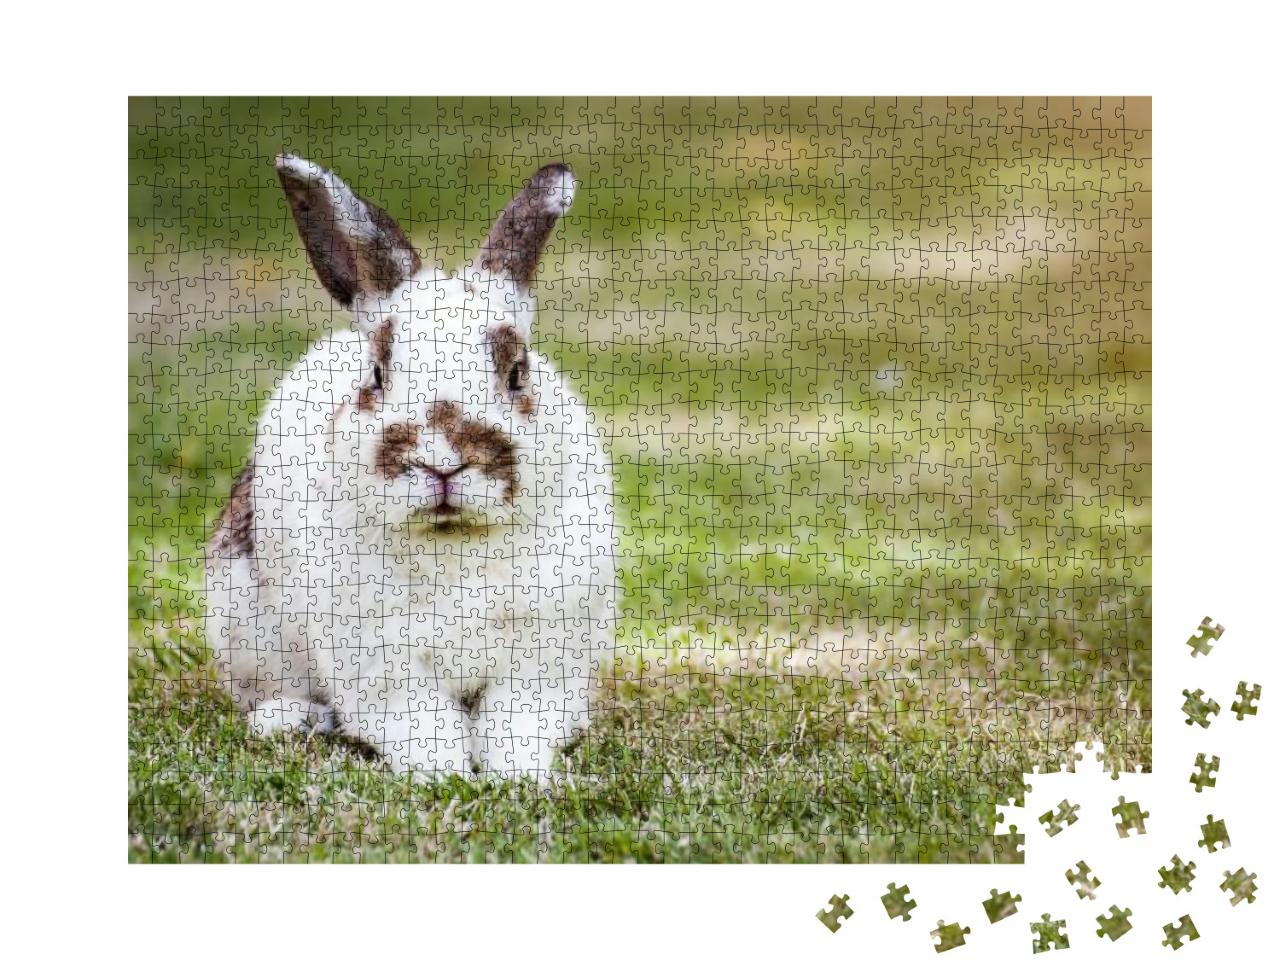 Puzzle 1000 Teile „Süßes geflecktes Kaninchen auf grünem Gras“